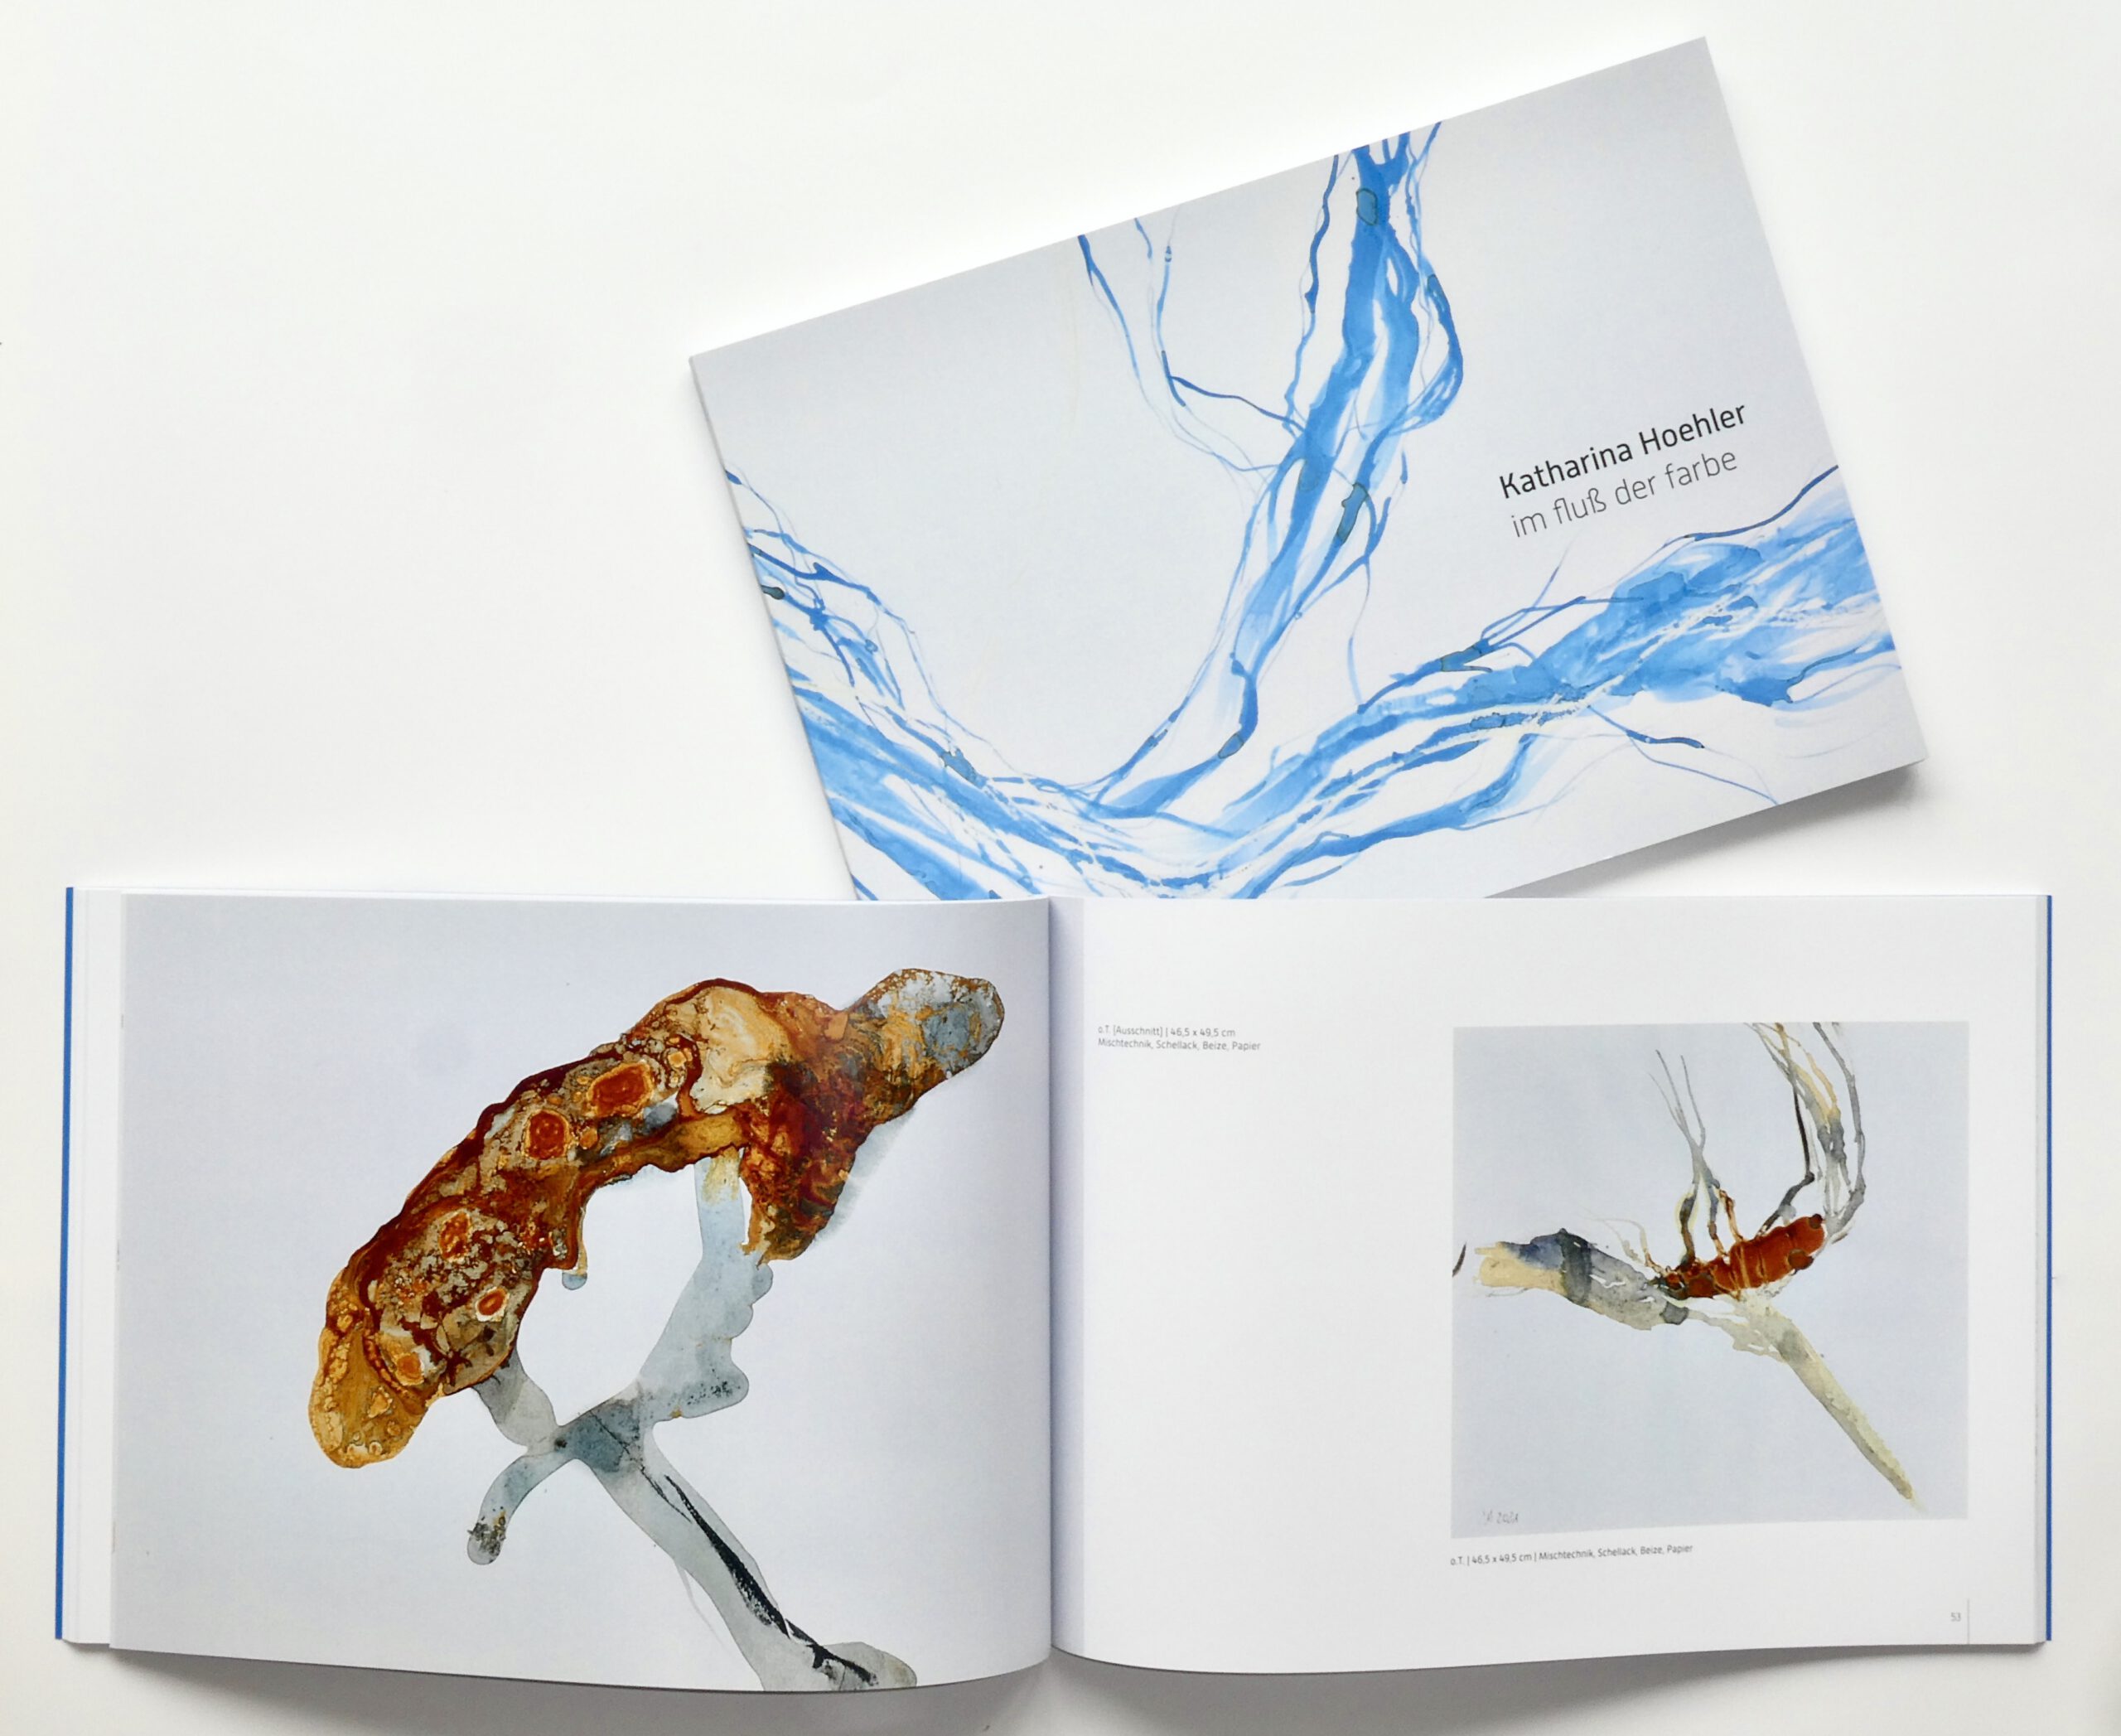 Katharina Hoehler Katalog Im Fluss der Farbe